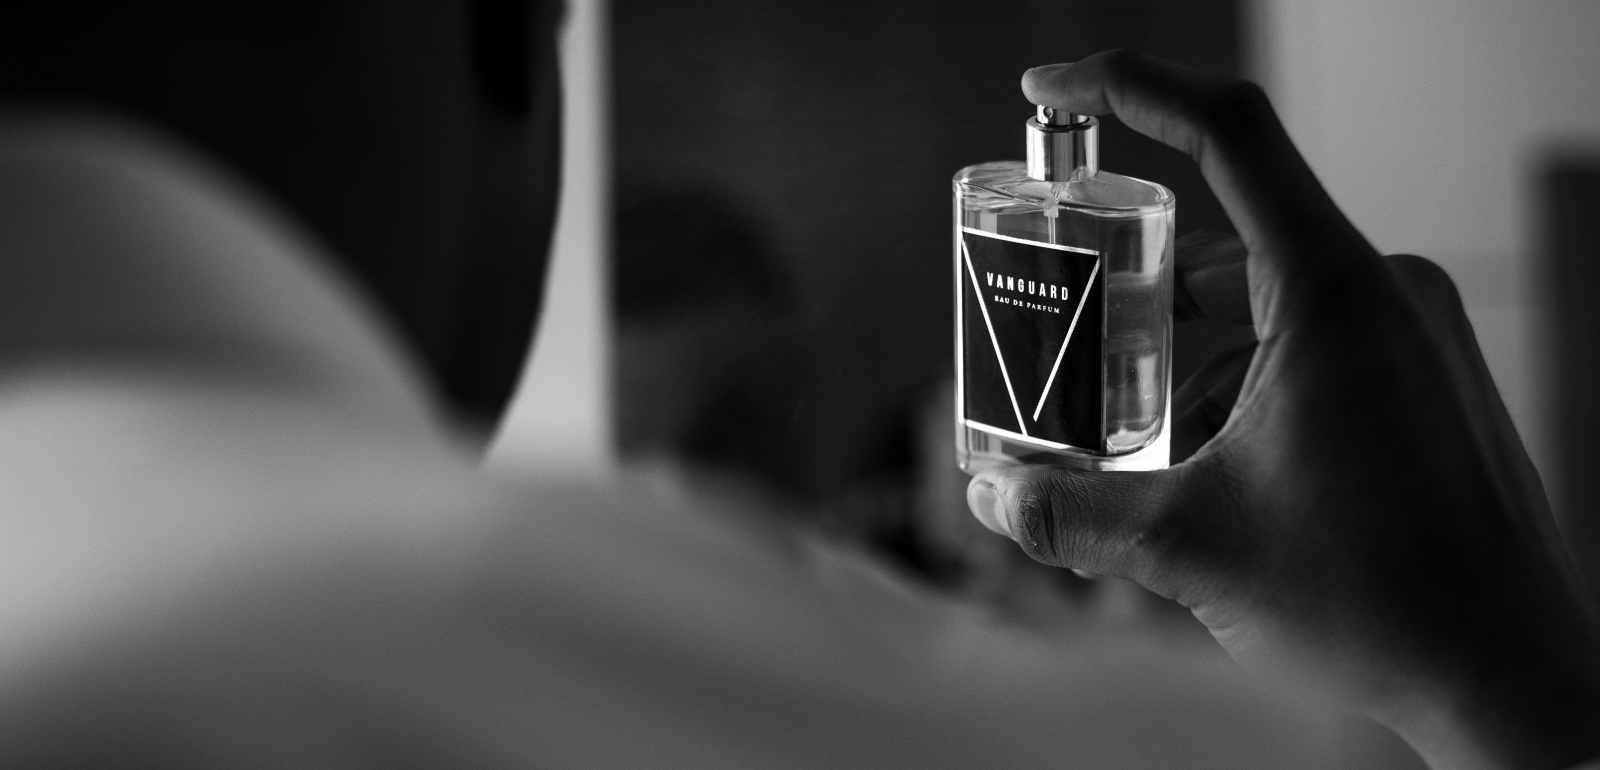 The striking fragrance of Vanguard Eau De Parfum